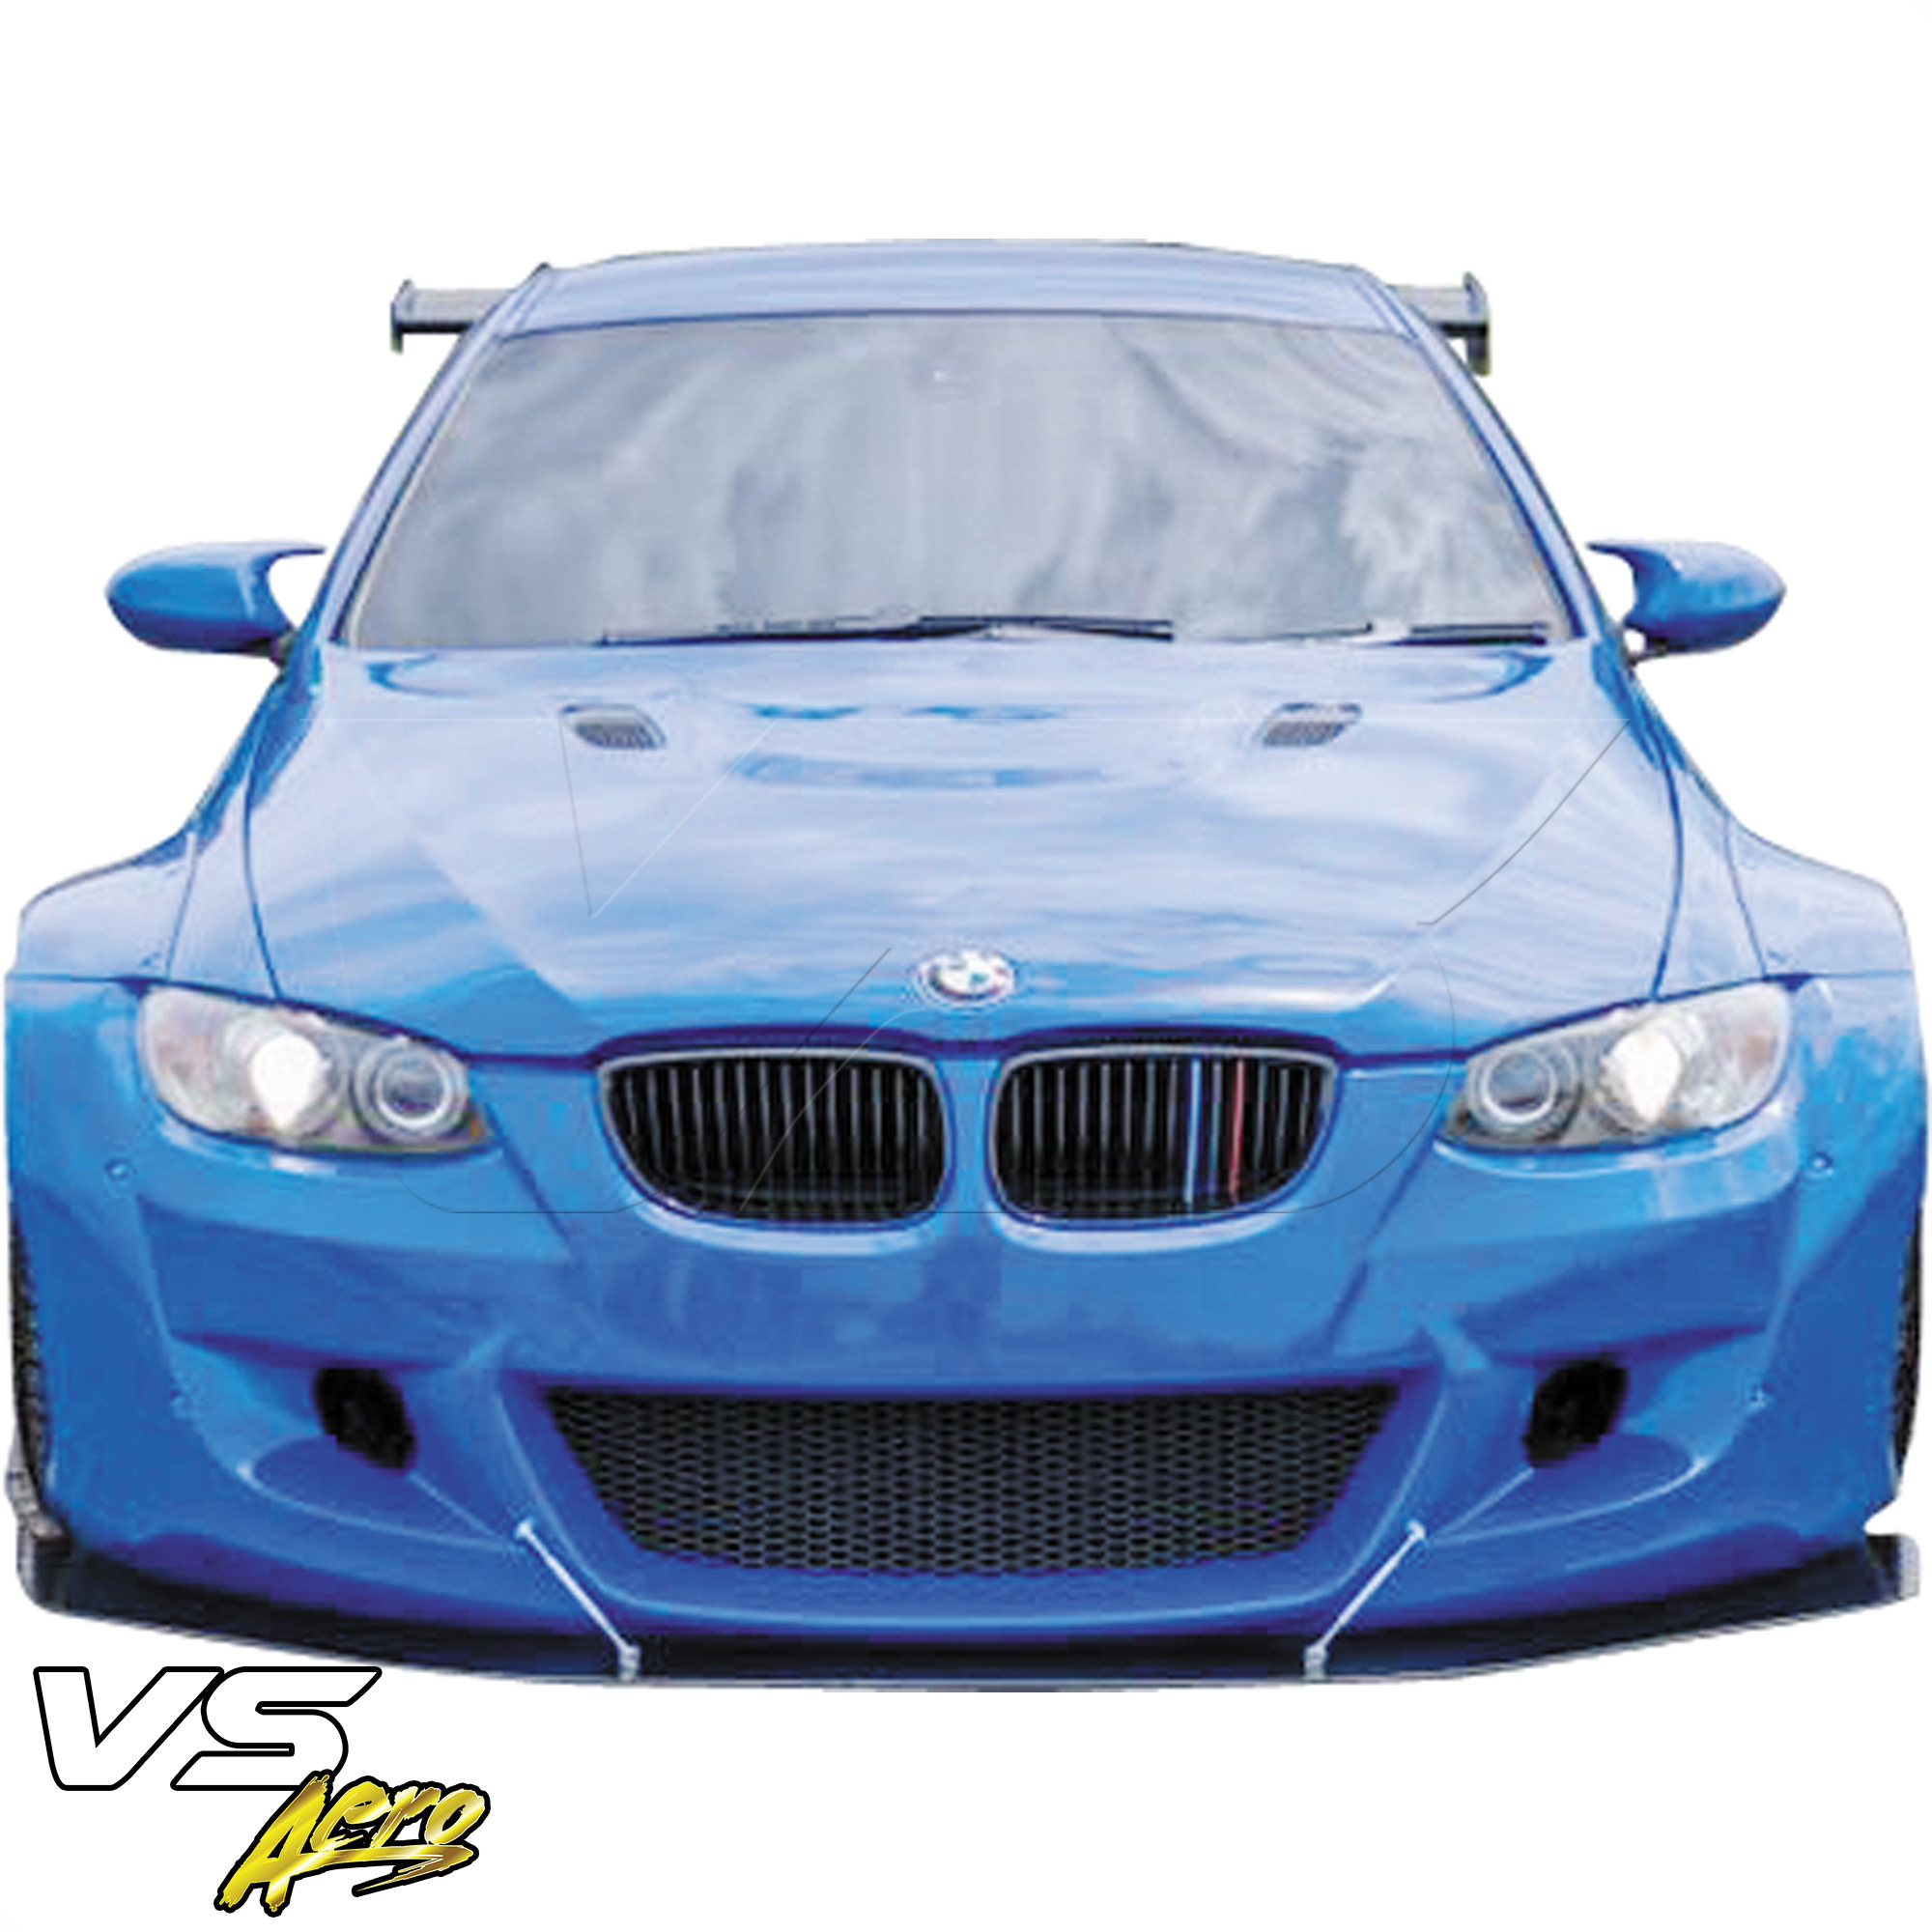 VSaero FRP TKYO Wide Body Front Bumper > BMW M3 E92 2008-2013 > 2dr - Image 9